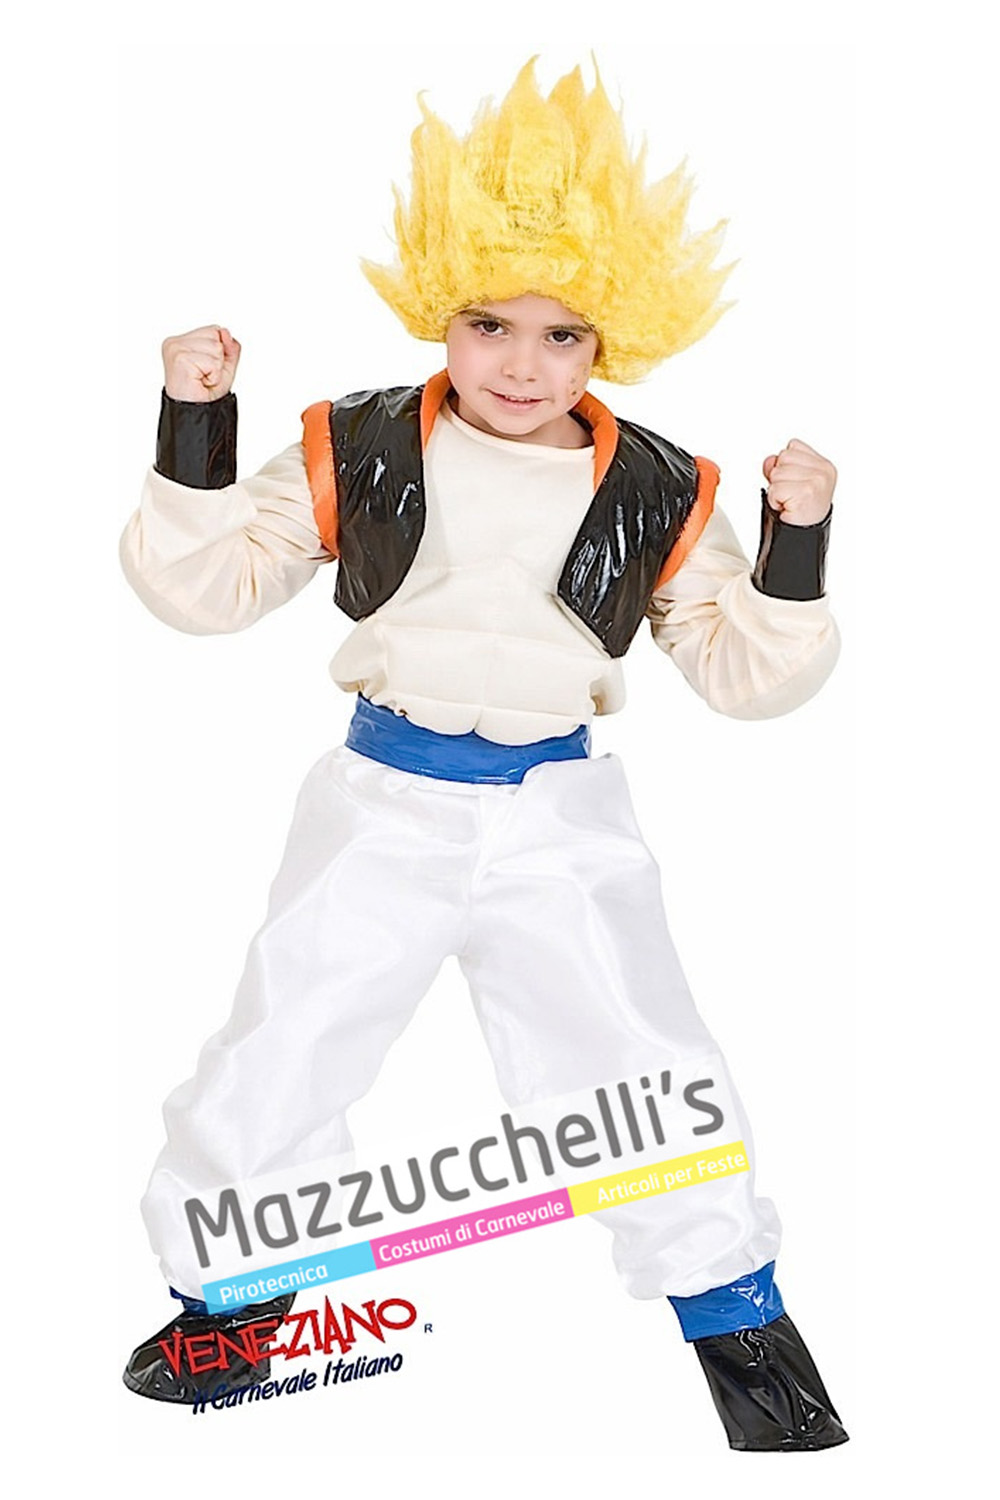 Costume Goku di Dragonball in vendita a Samarate Varese da Mazzucchellis